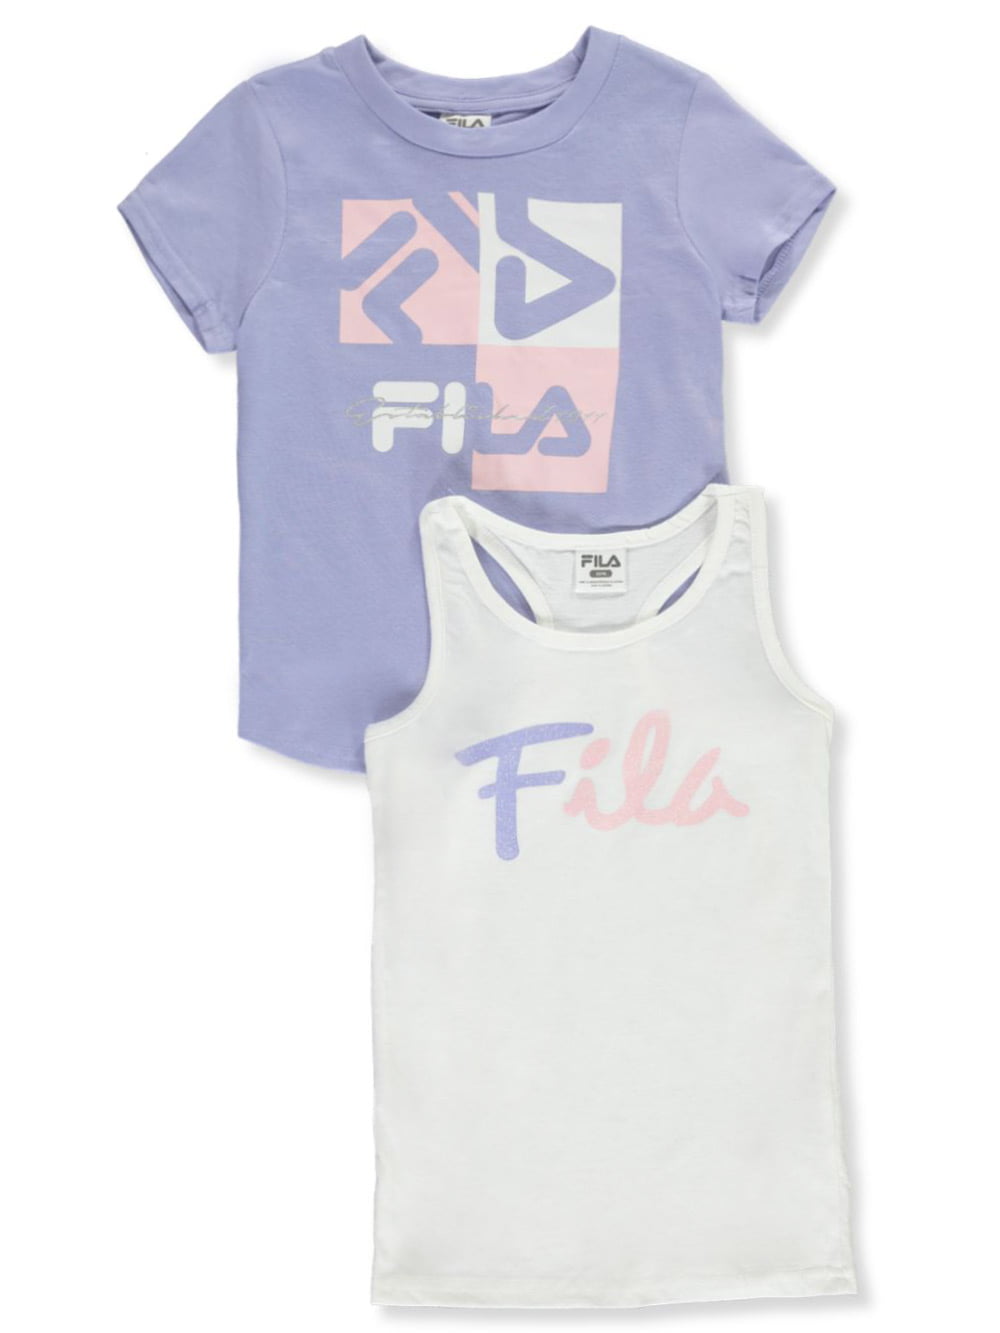 fila girls shirt